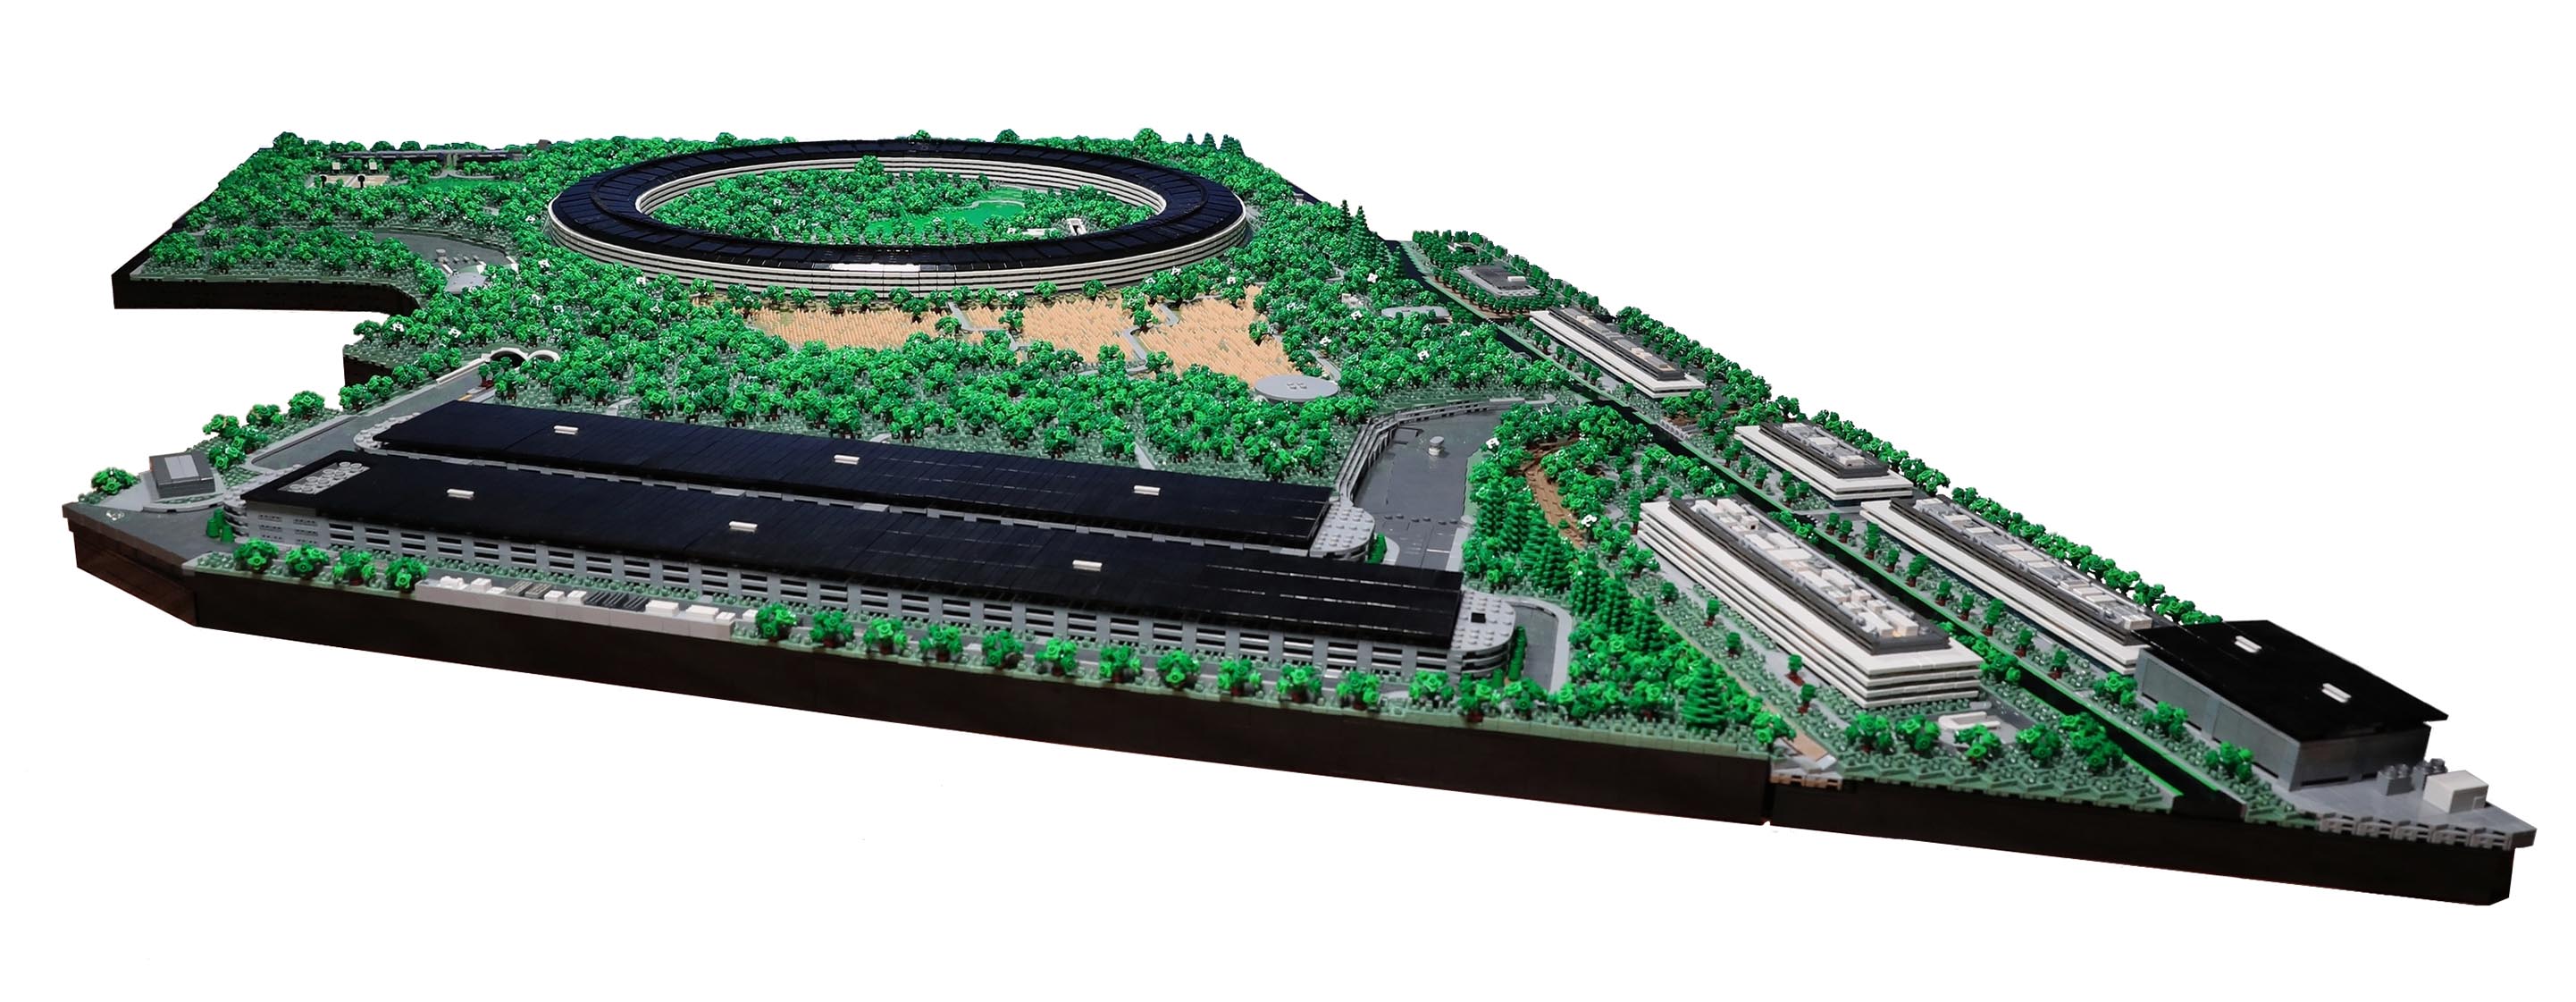 The full Apple Park in Lego